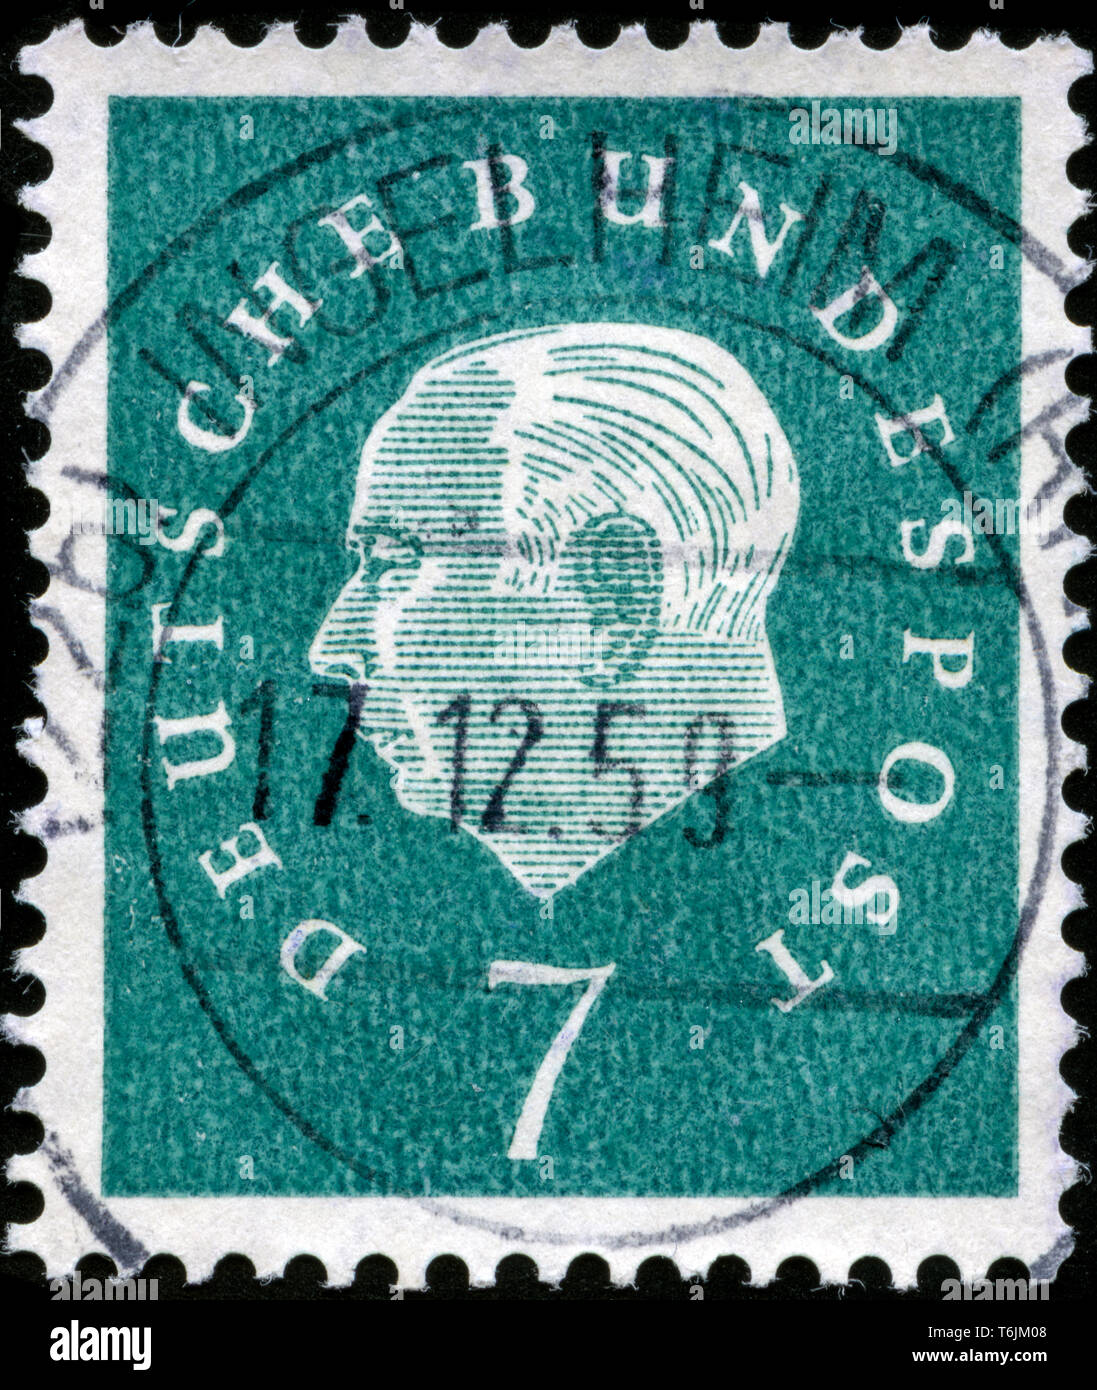 Francobollo dalla Repubblica federale di Germania il Presidente federale Theodor Heuss serie emesse nel 1959 Foto Stock